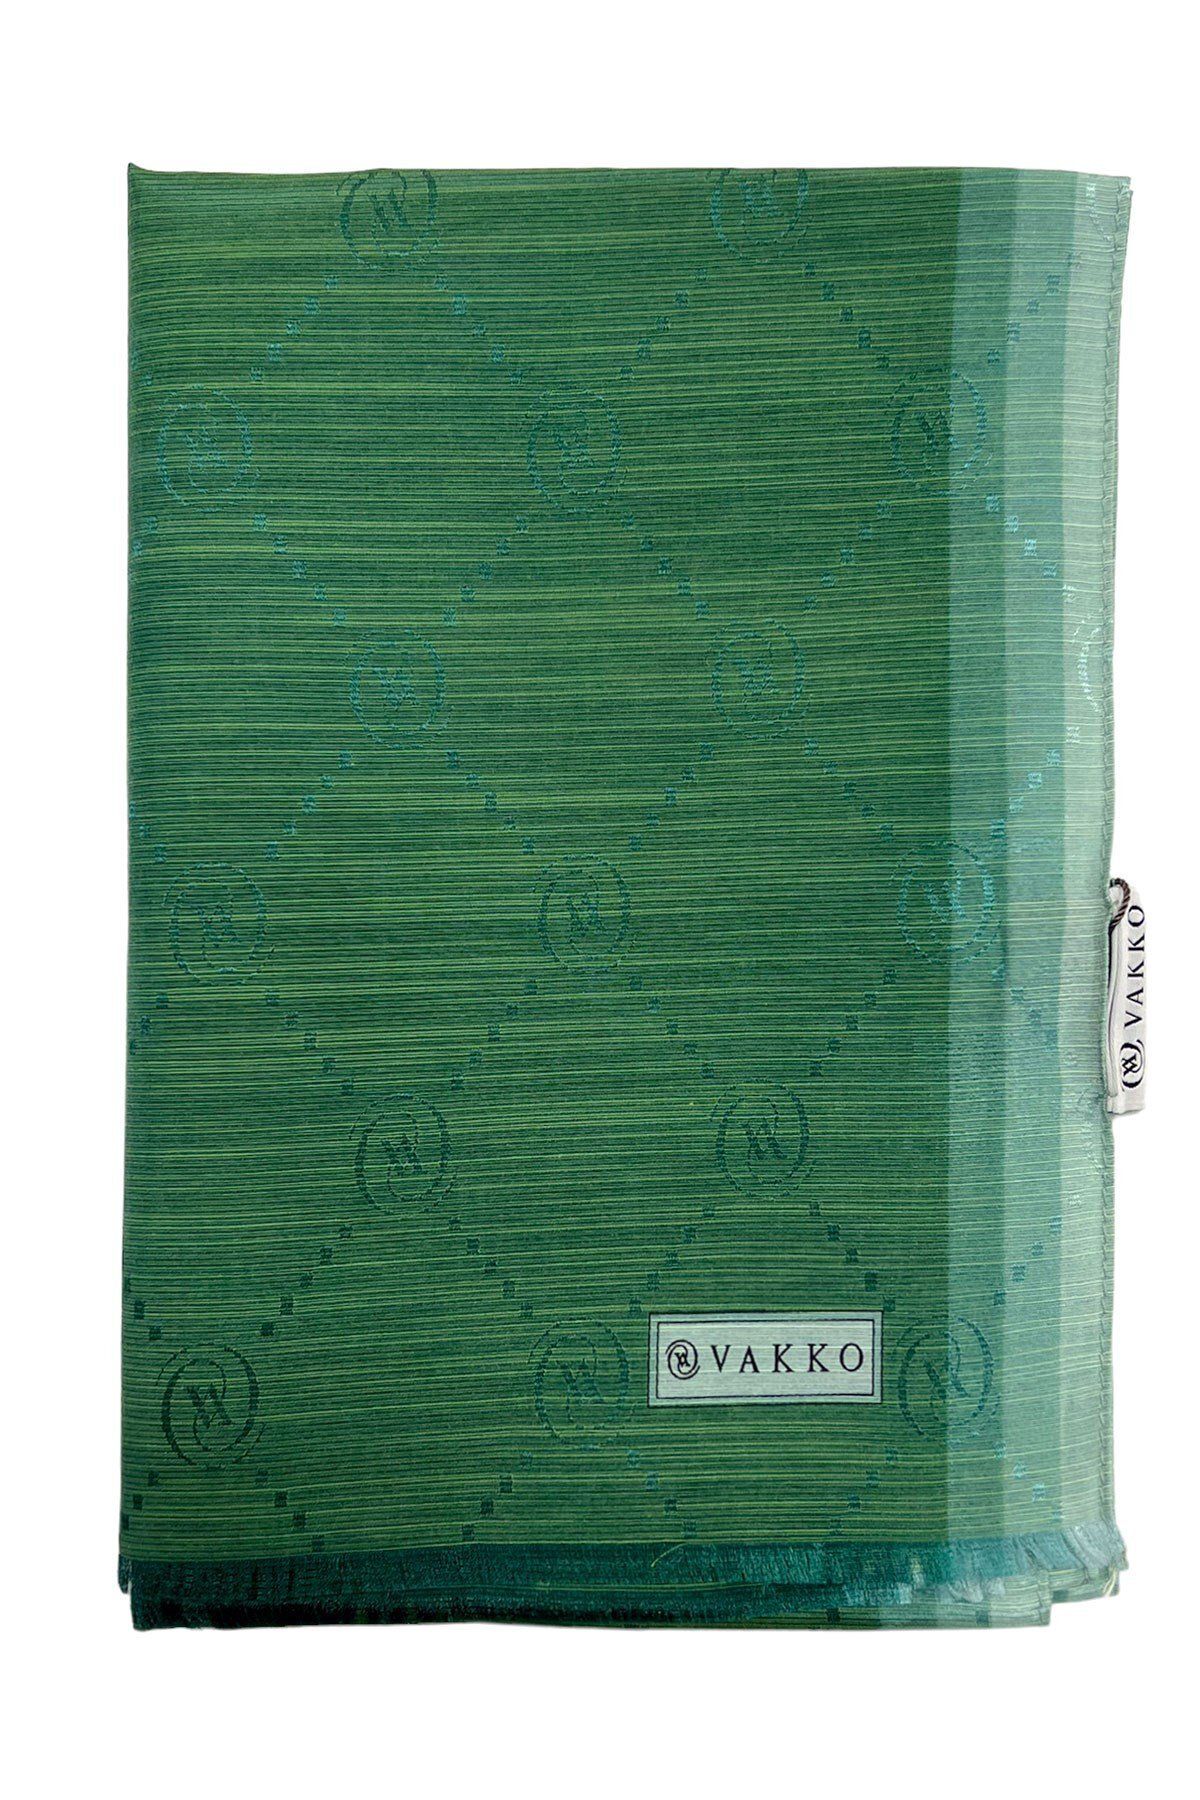 Vakko Monogram Desenli Pamuk İpek Şal 3000908-Zümrüt Yeşili